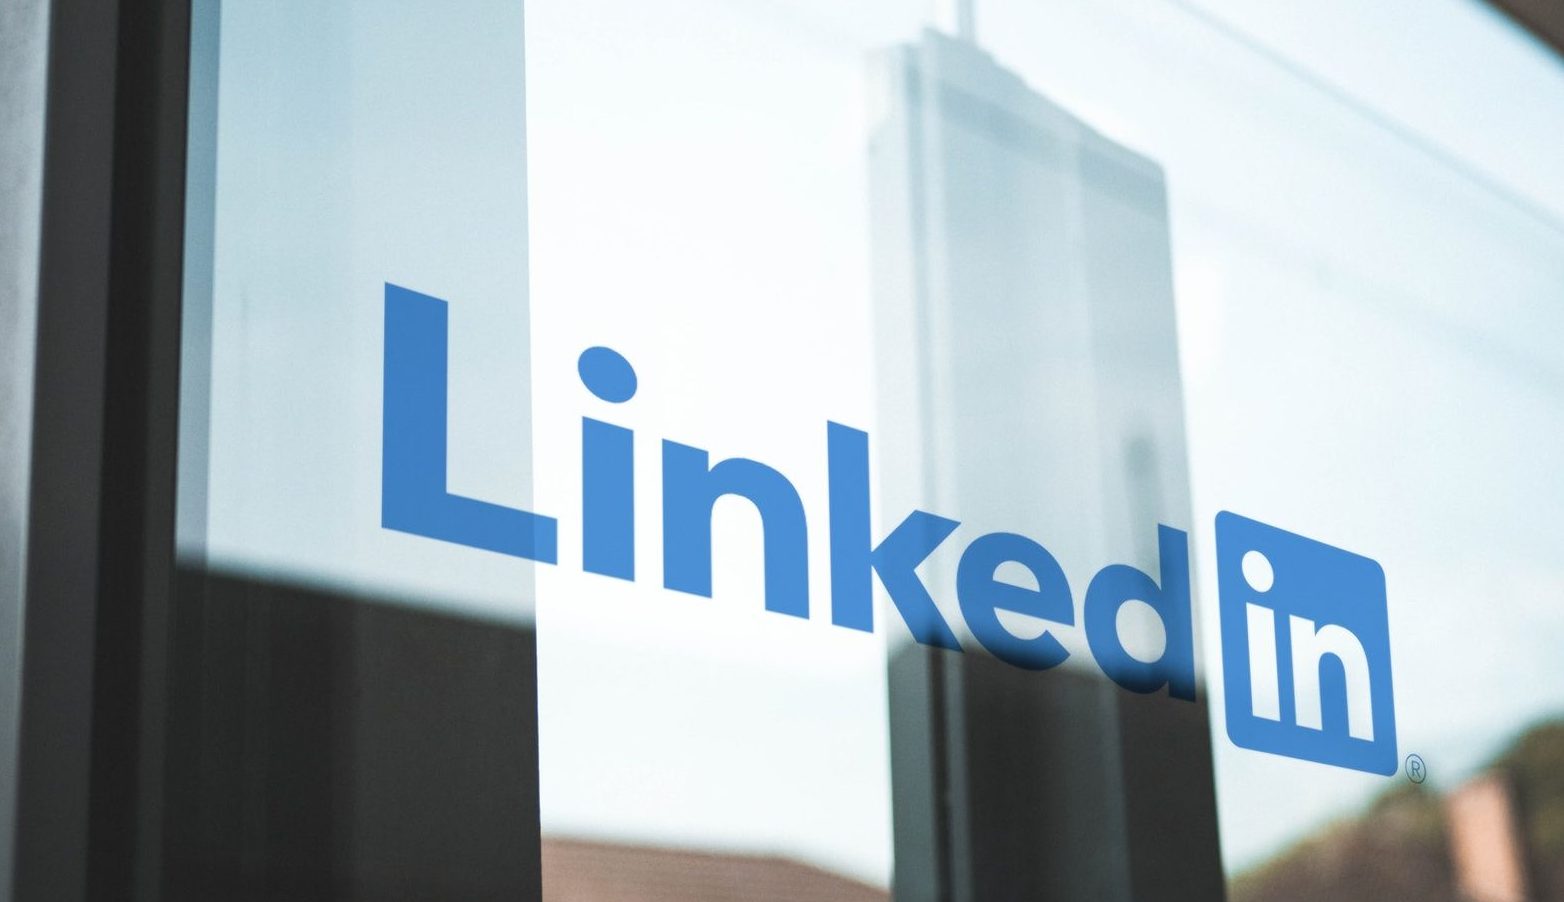 Confira quais são os cargos em alta de 2022 de acordo com o LinkedIn, além das suas exigências e detalhes.